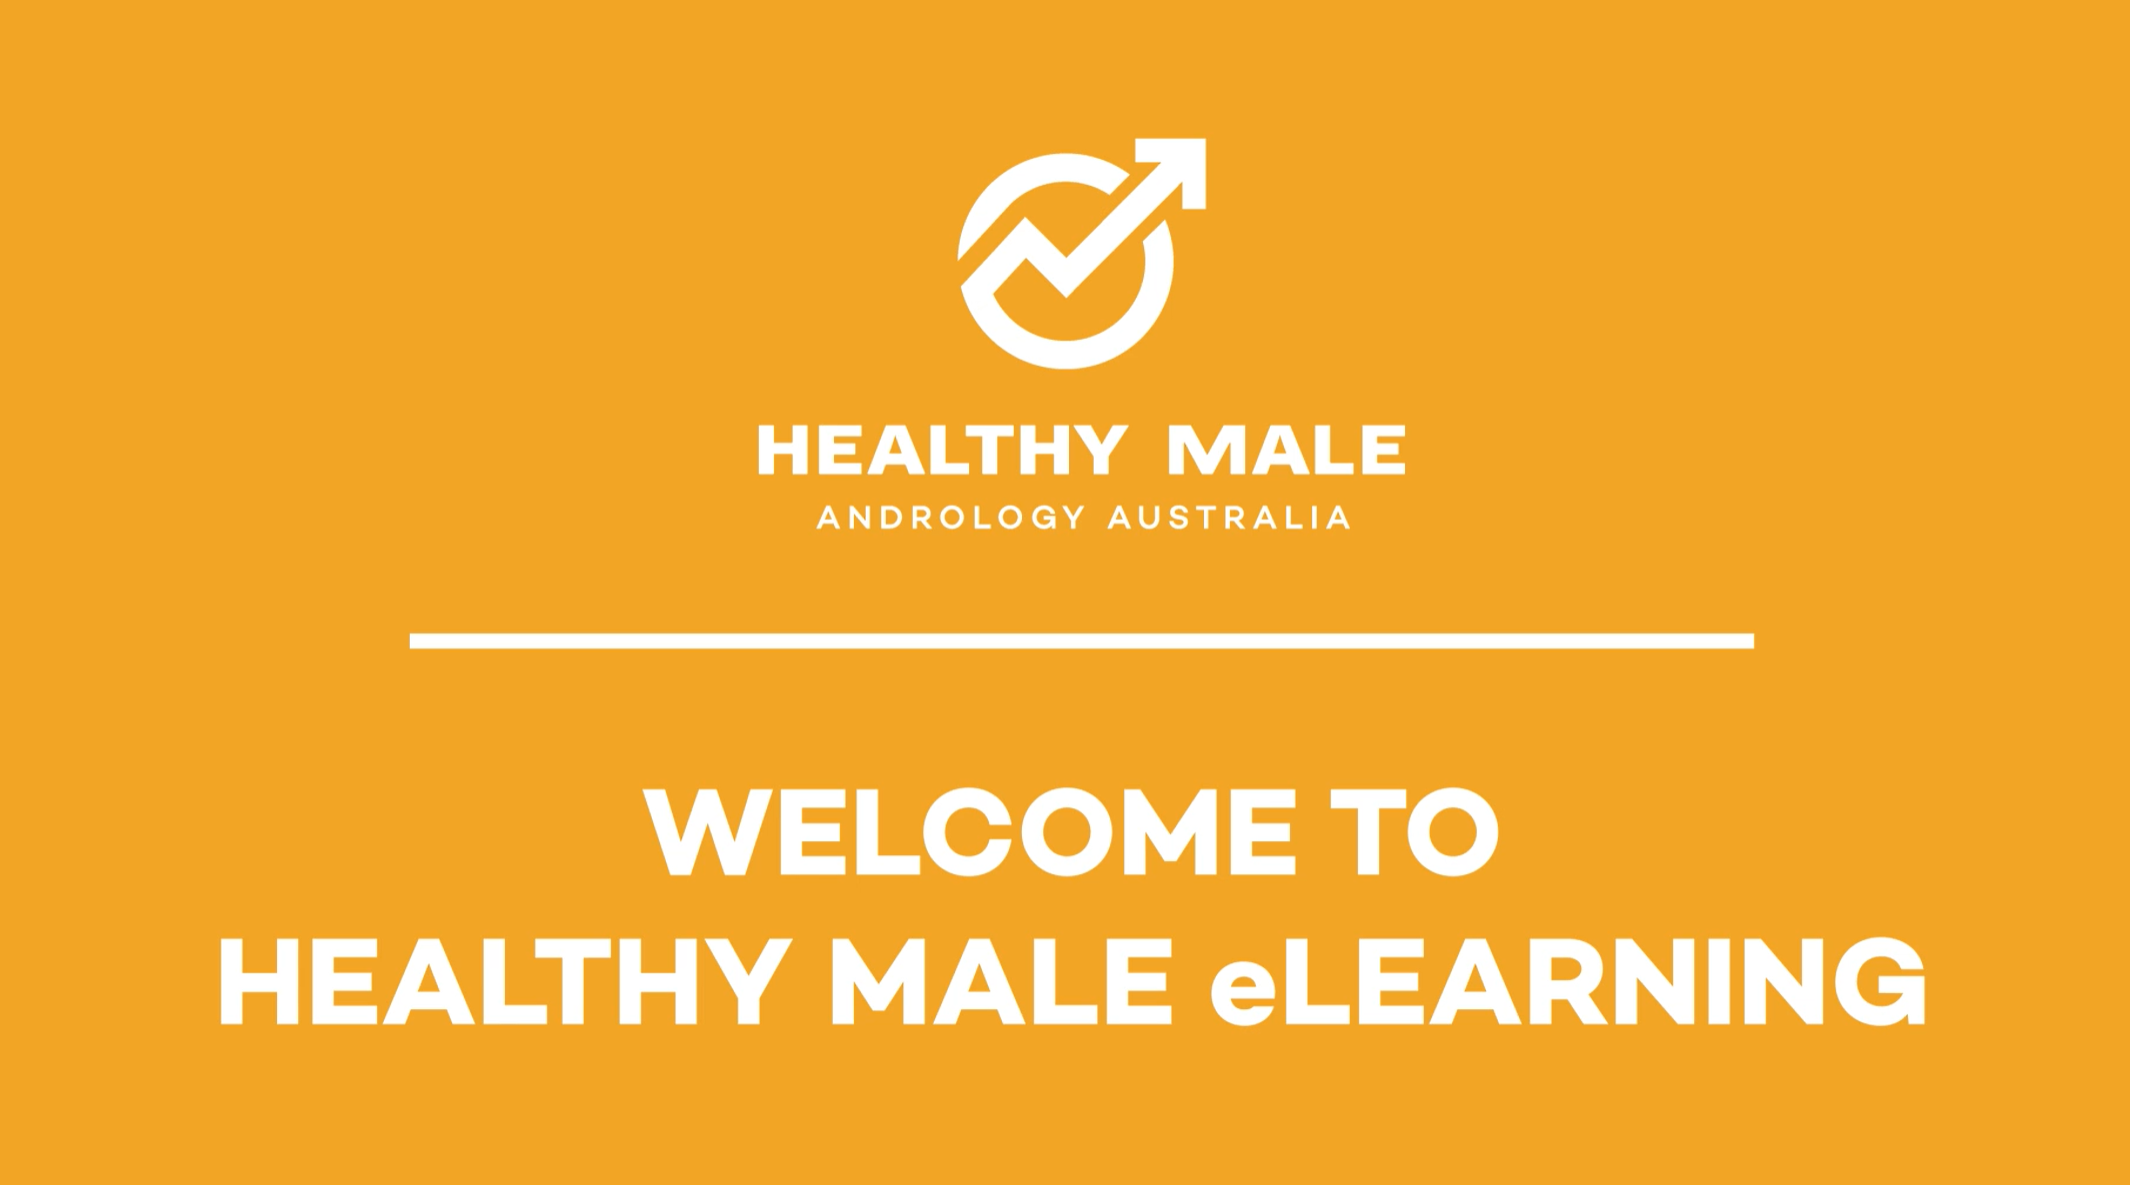 Healthy Male’s eLearning portal